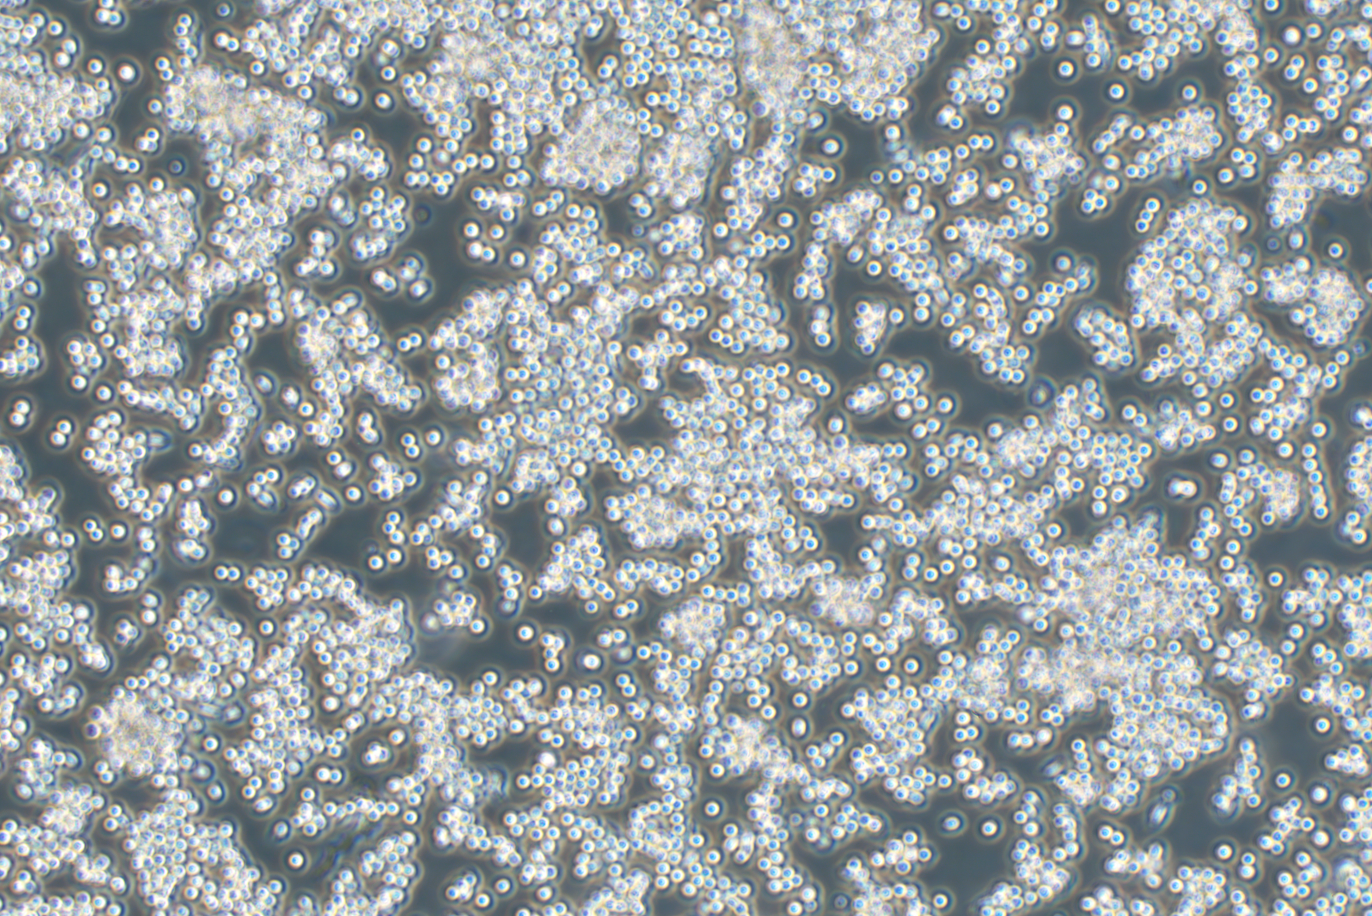 小鼠单核巨噬细胞白血病细胞RAW264.7（种属鉴定）